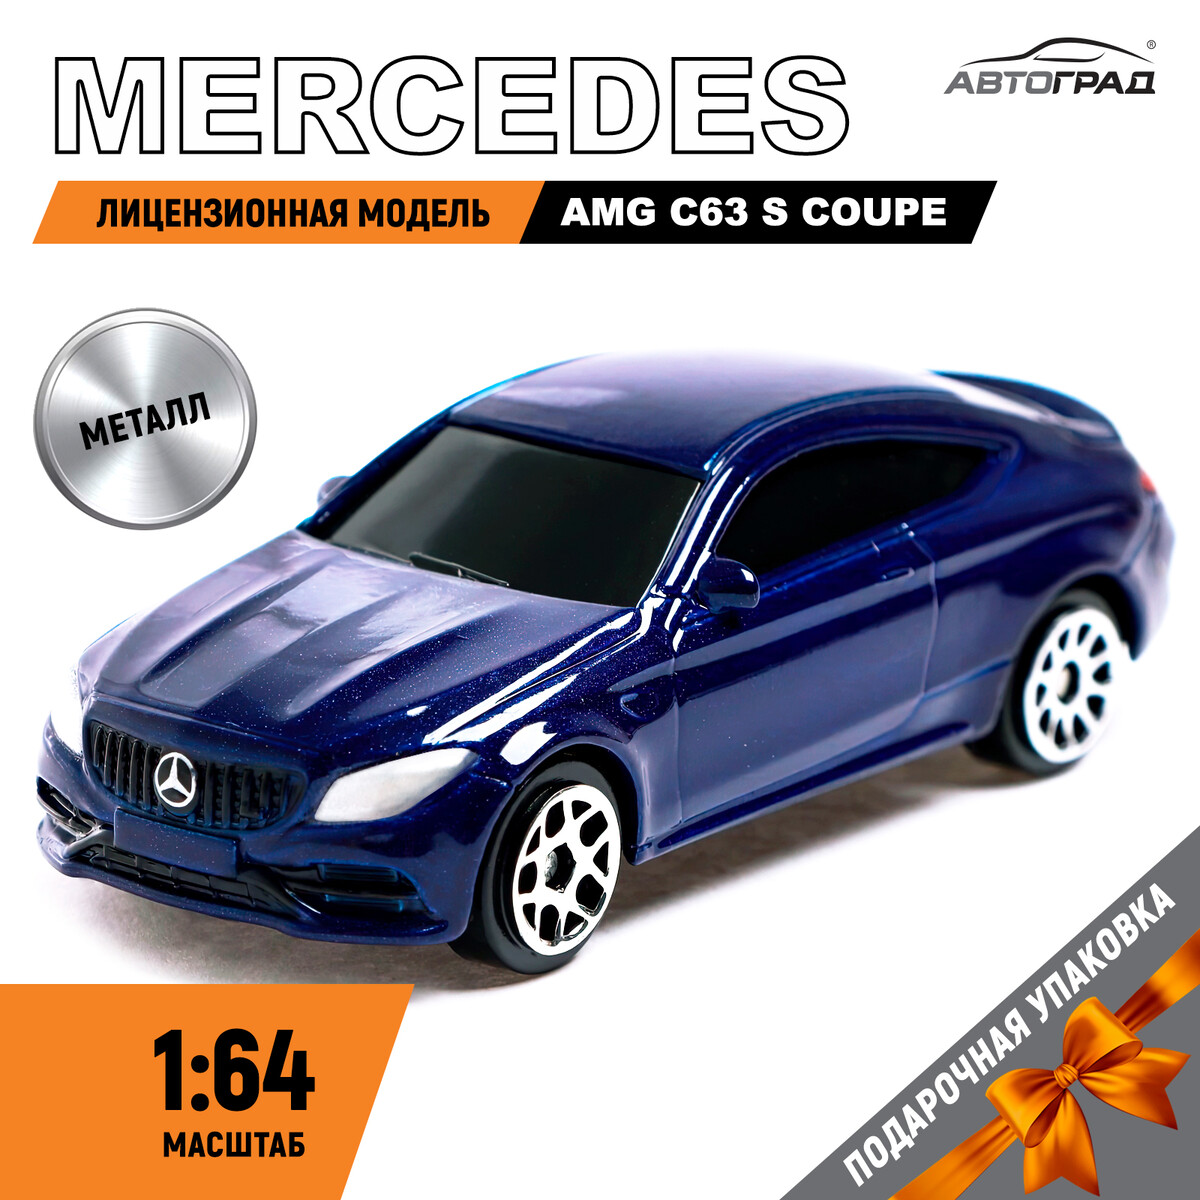 Машина металлическая mercedes-amg c63 s coupe, 1:64, цвет синий la070wv4 sd 01 lcd modul 7 inci untuk mercedes navigasi mobil lcd